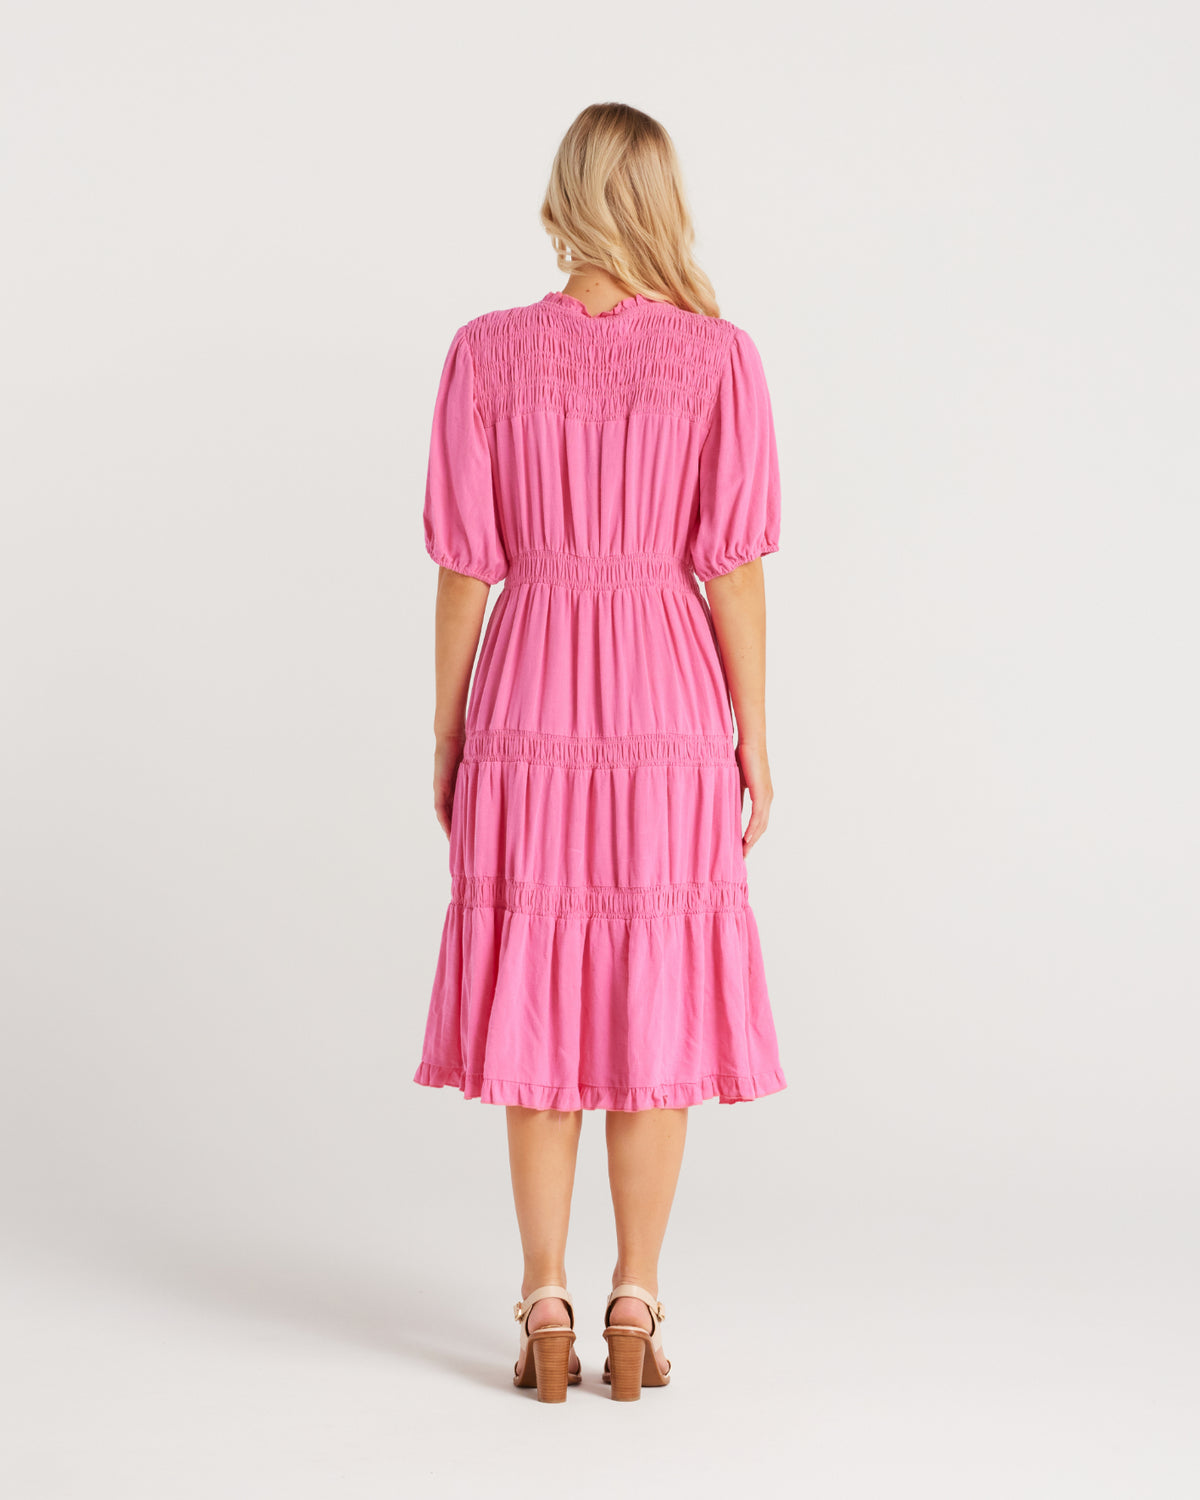 Zafina Astrid Dress Bright Pink